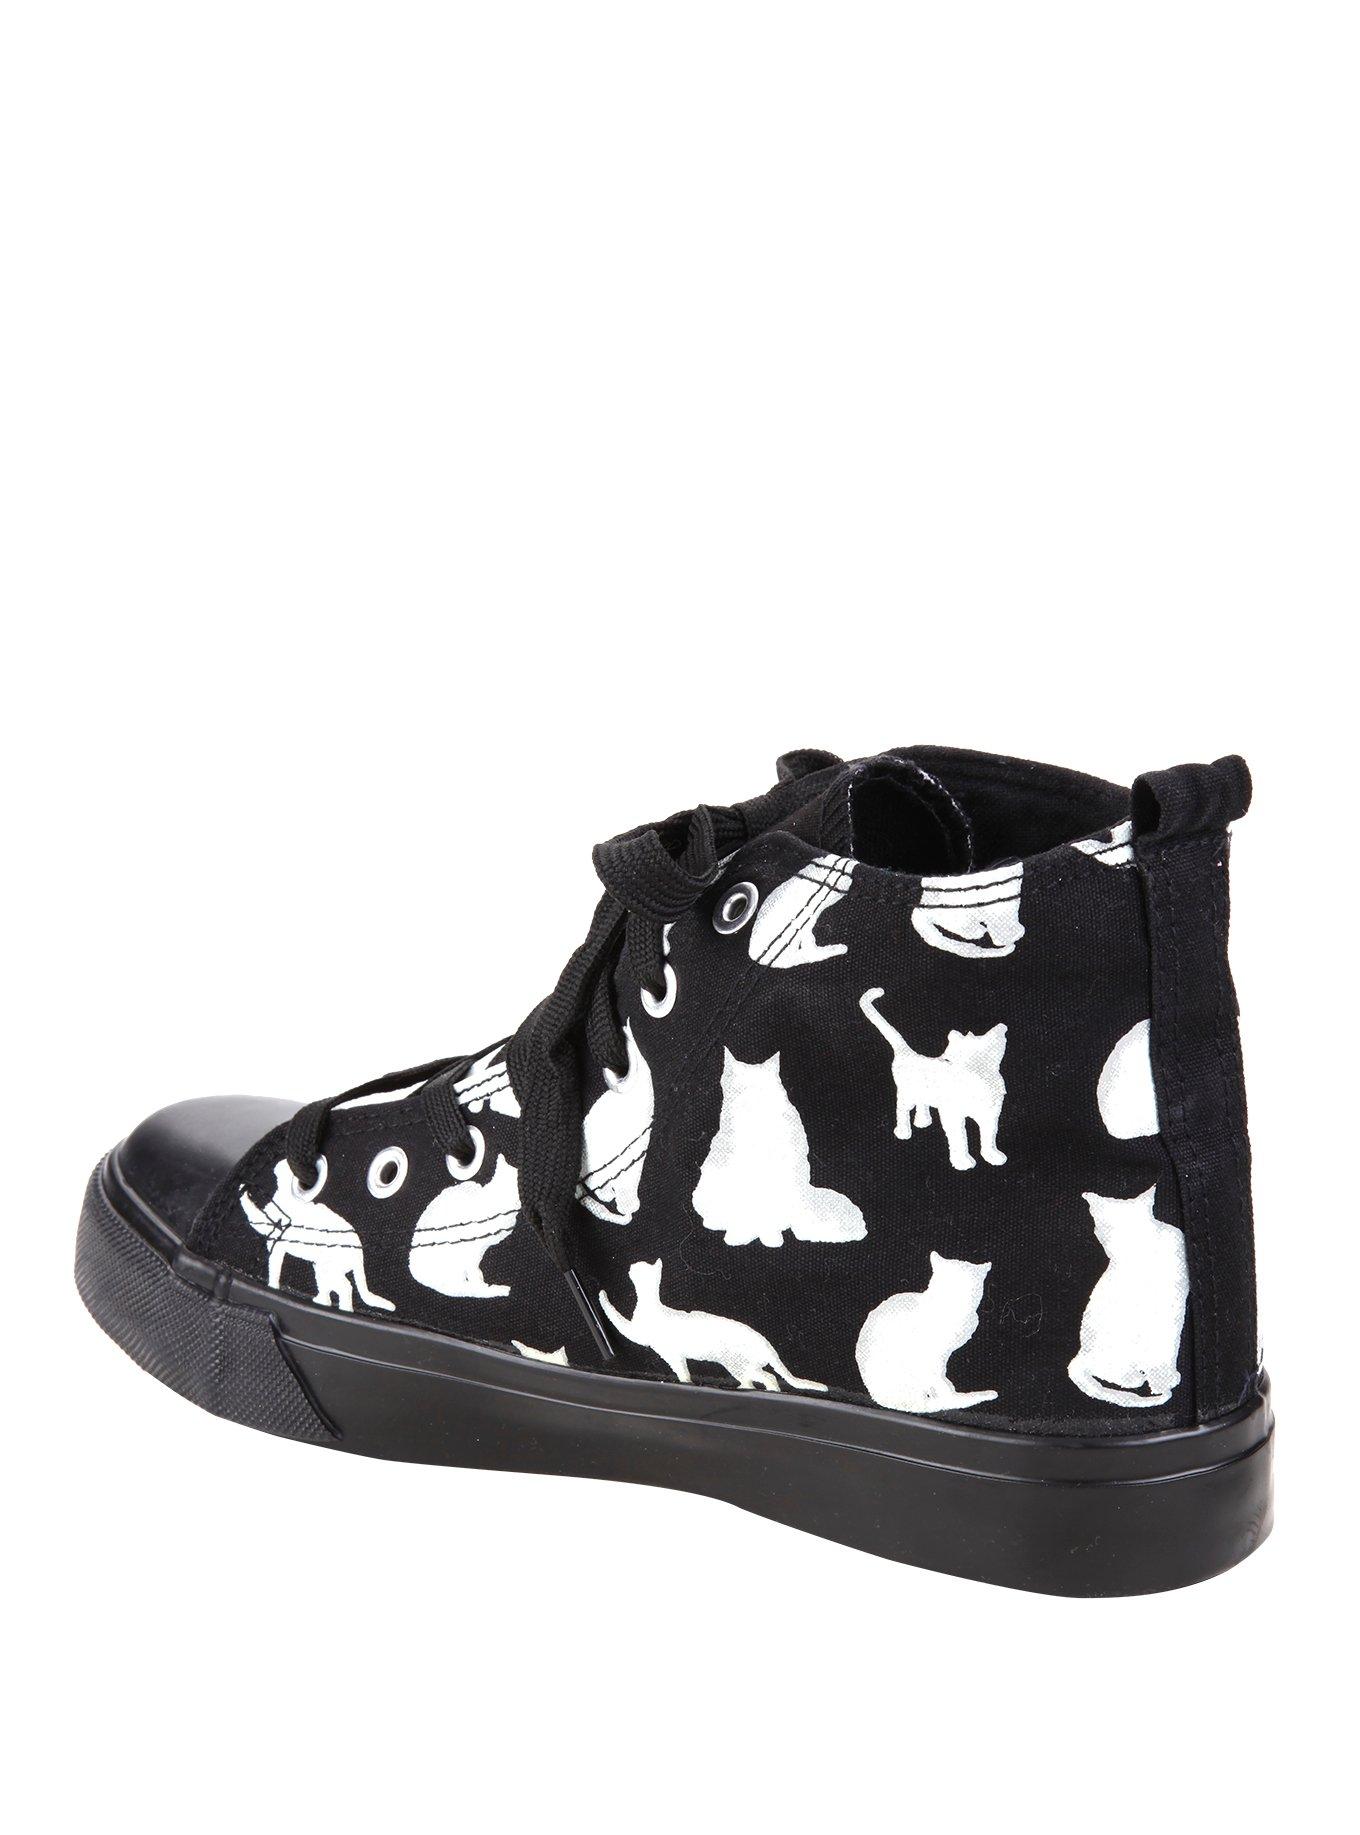 Black & White Cat Hi-Top Sneakers, , alternate